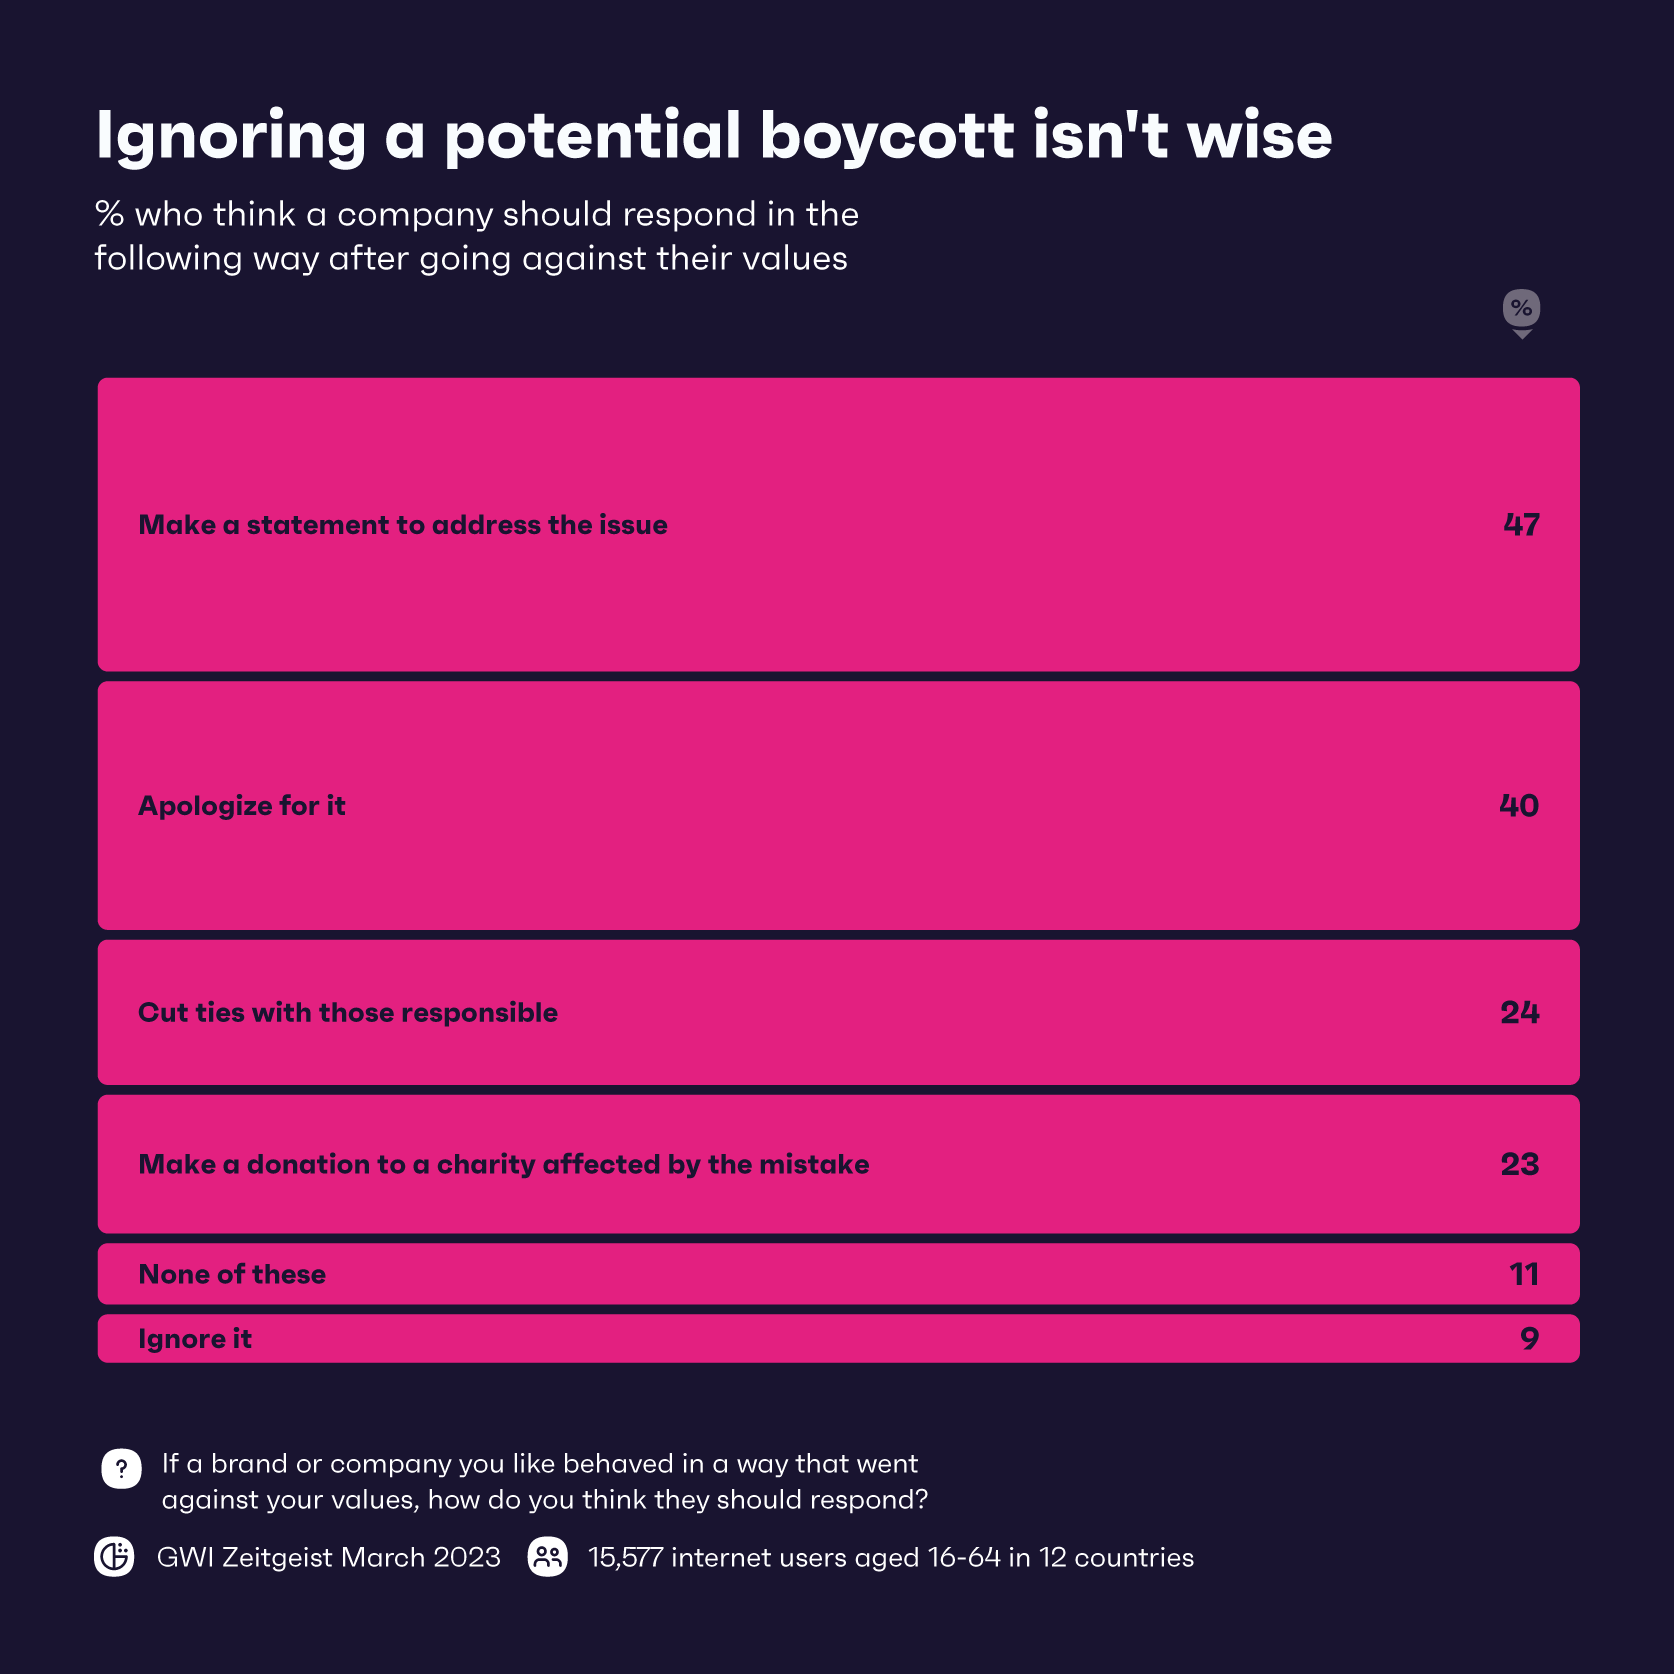 Диаграмма, показывающая, как, по мнению потребителей, бренды должны реагировать на возможный бойкот